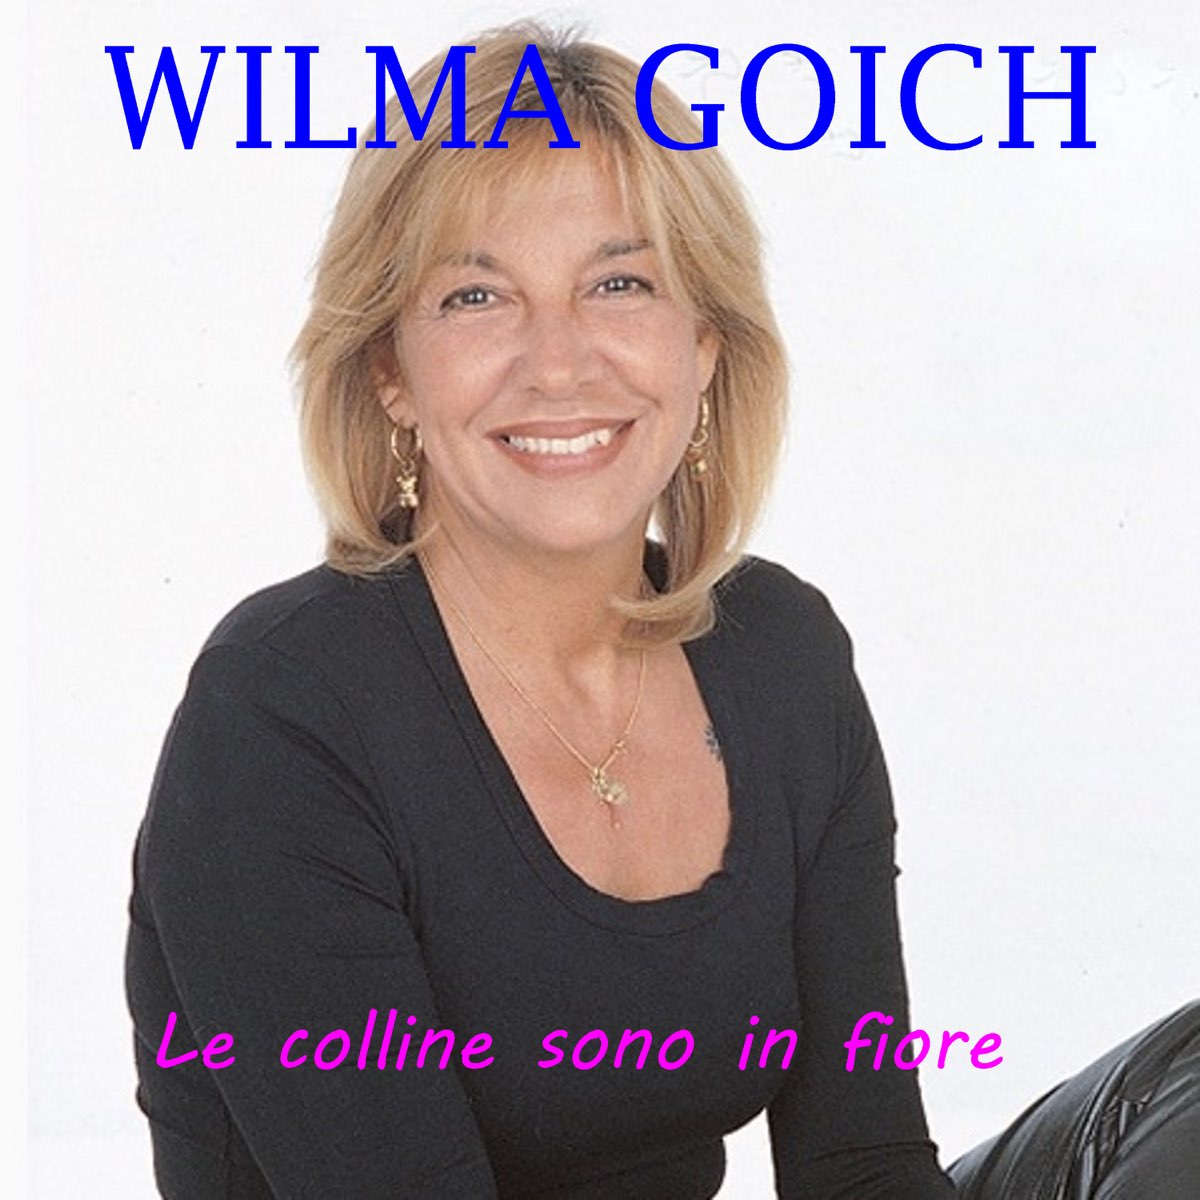 Le colline sono in fiore - EP - Album by Wilma Goich - Apple Music